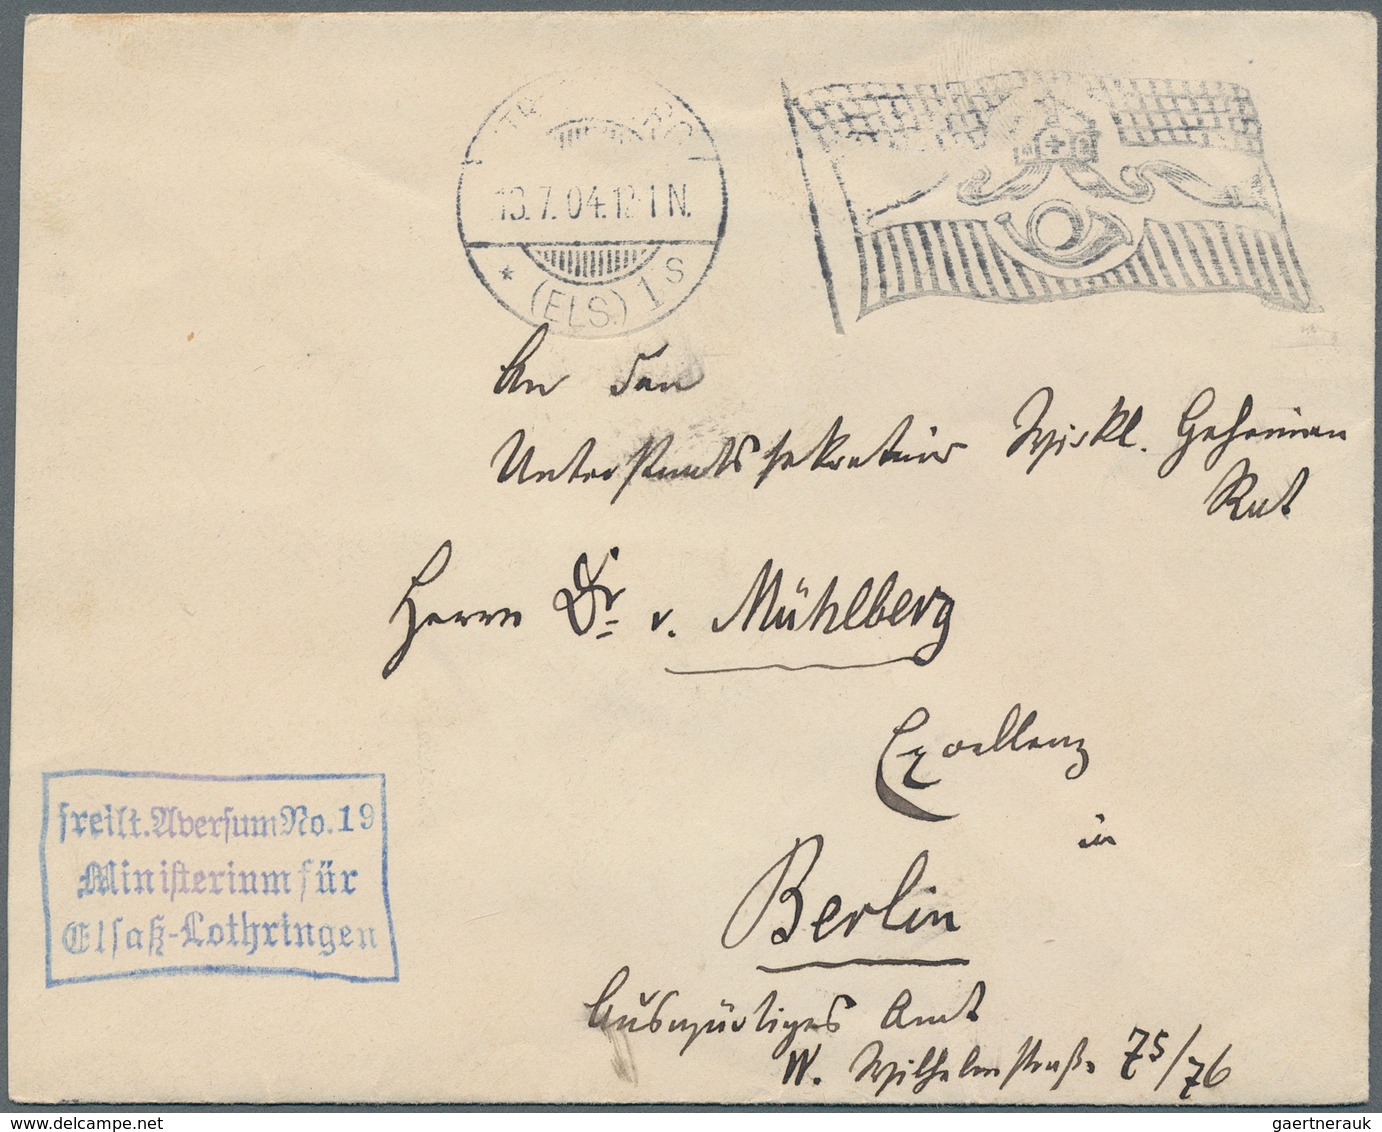 Bayern - Marken und Briefe: 1850/1920, meist gestempelte Partie auf 13 Steckkarten, etwas unterschie